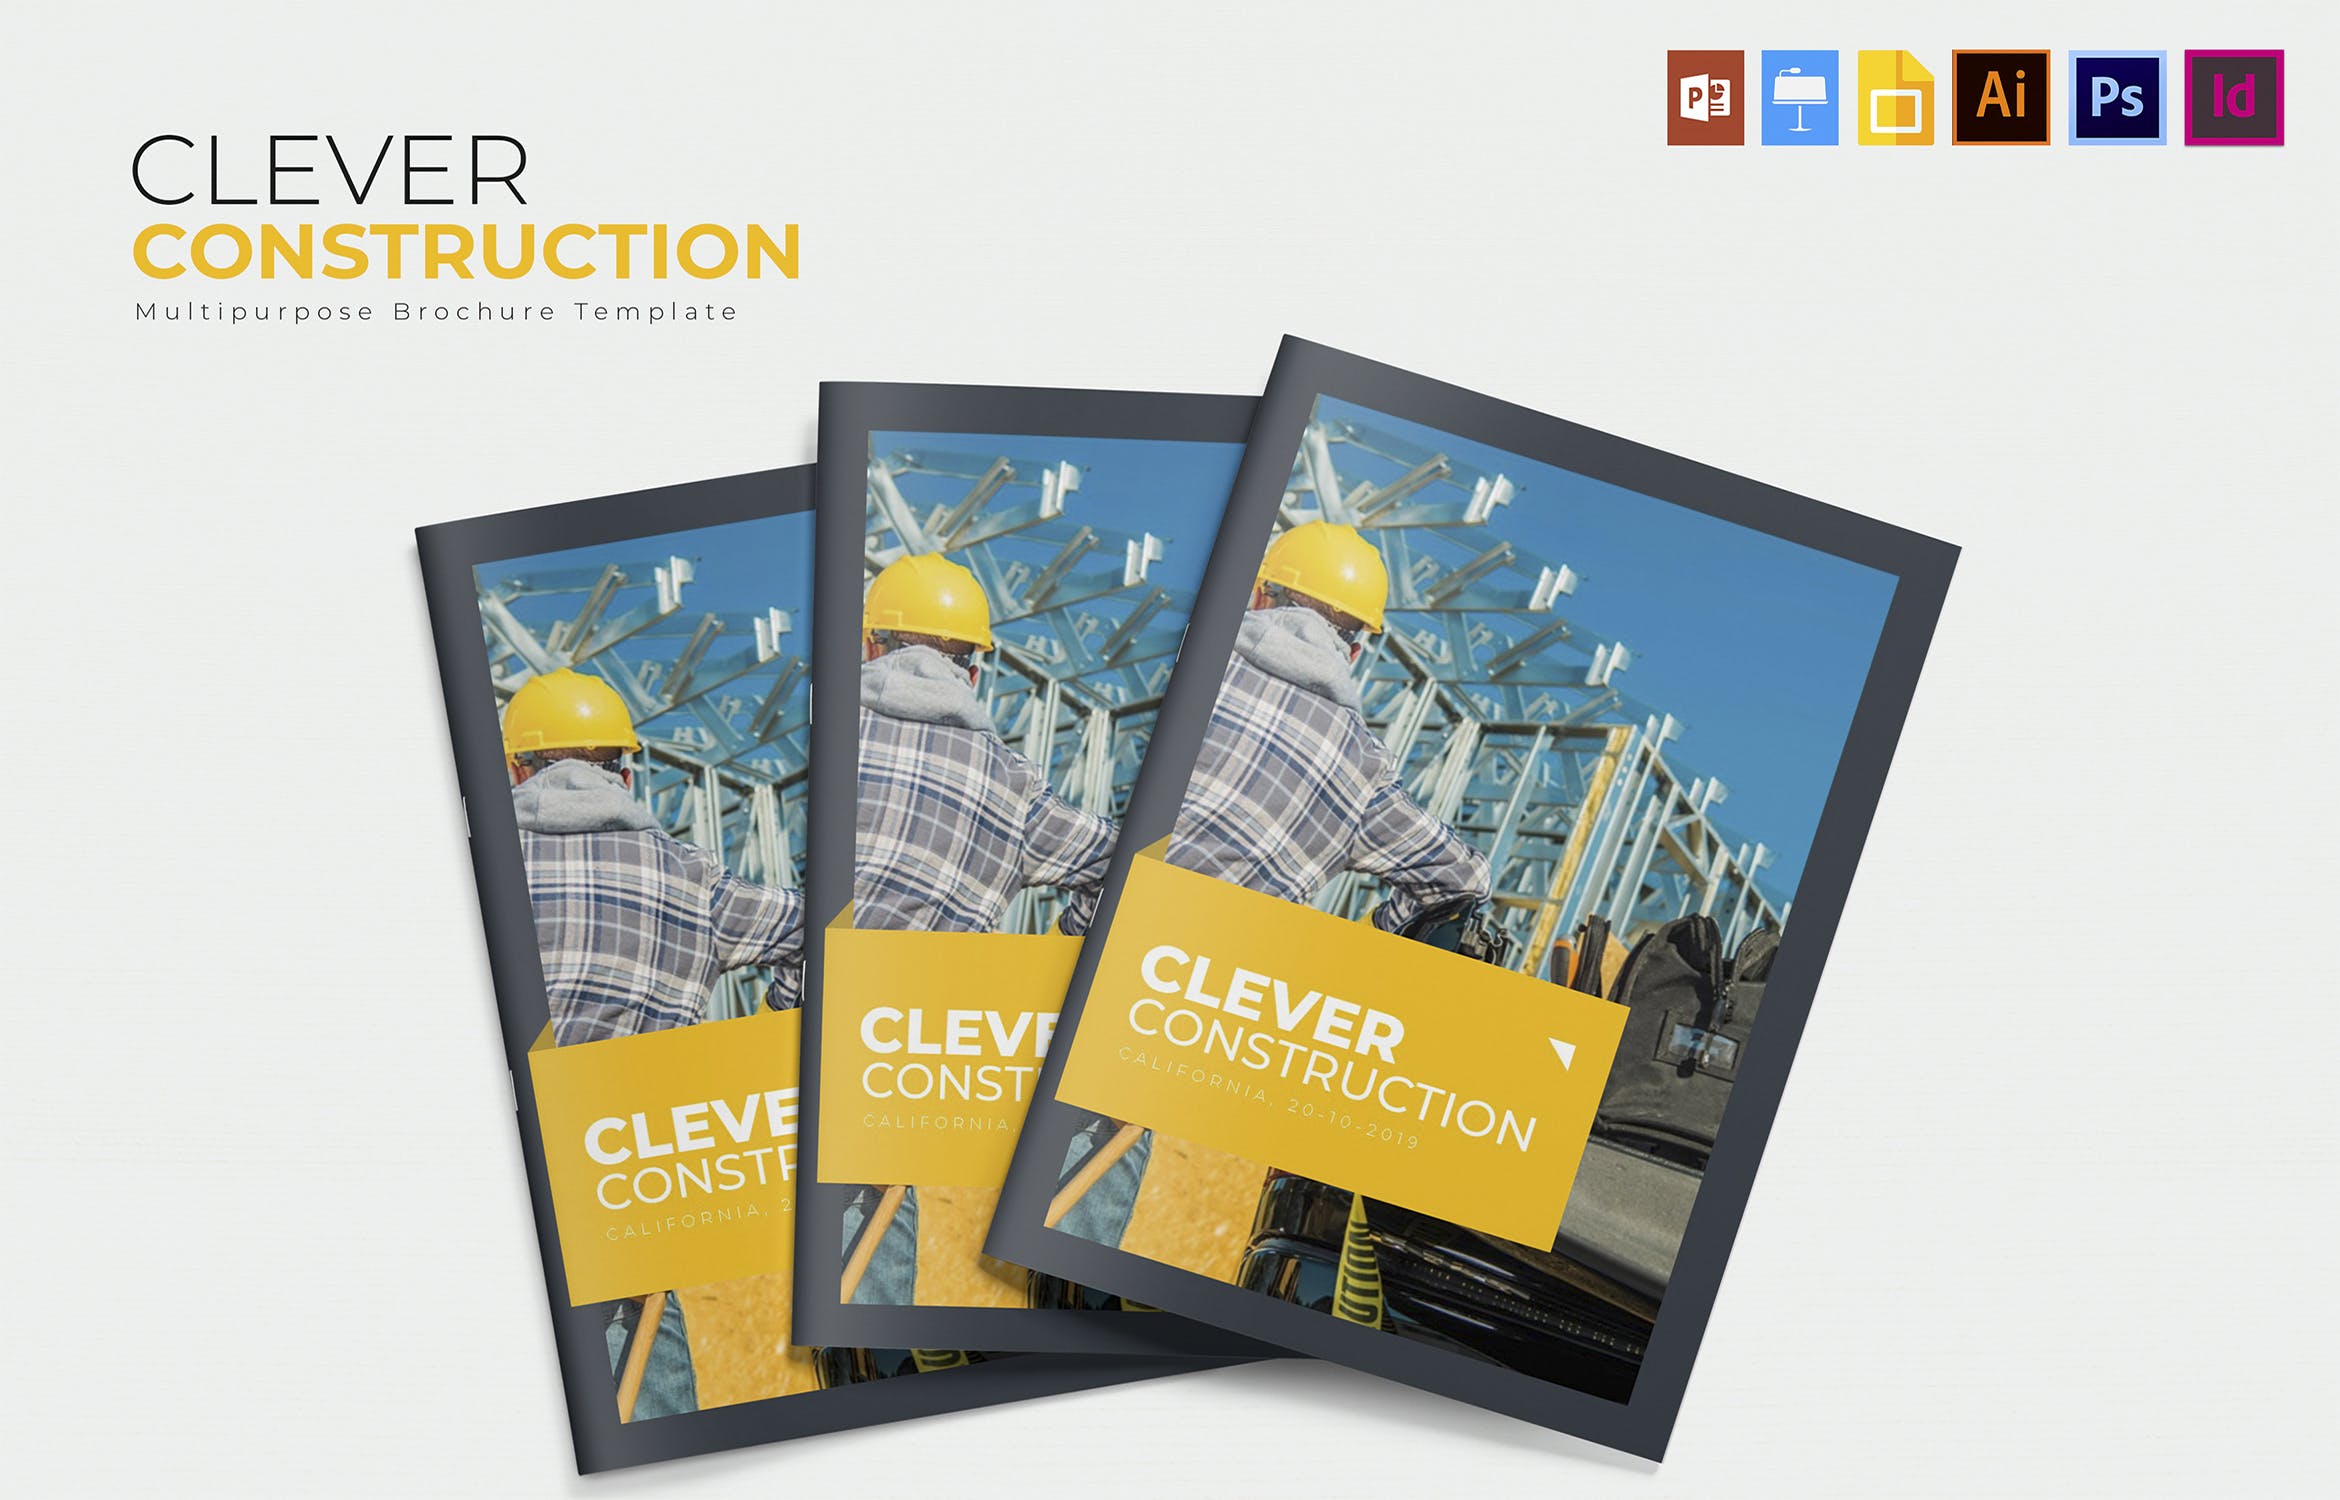 建筑公司/施工企业简介画册设计模板 Clever Construction | Brochure插图(1)